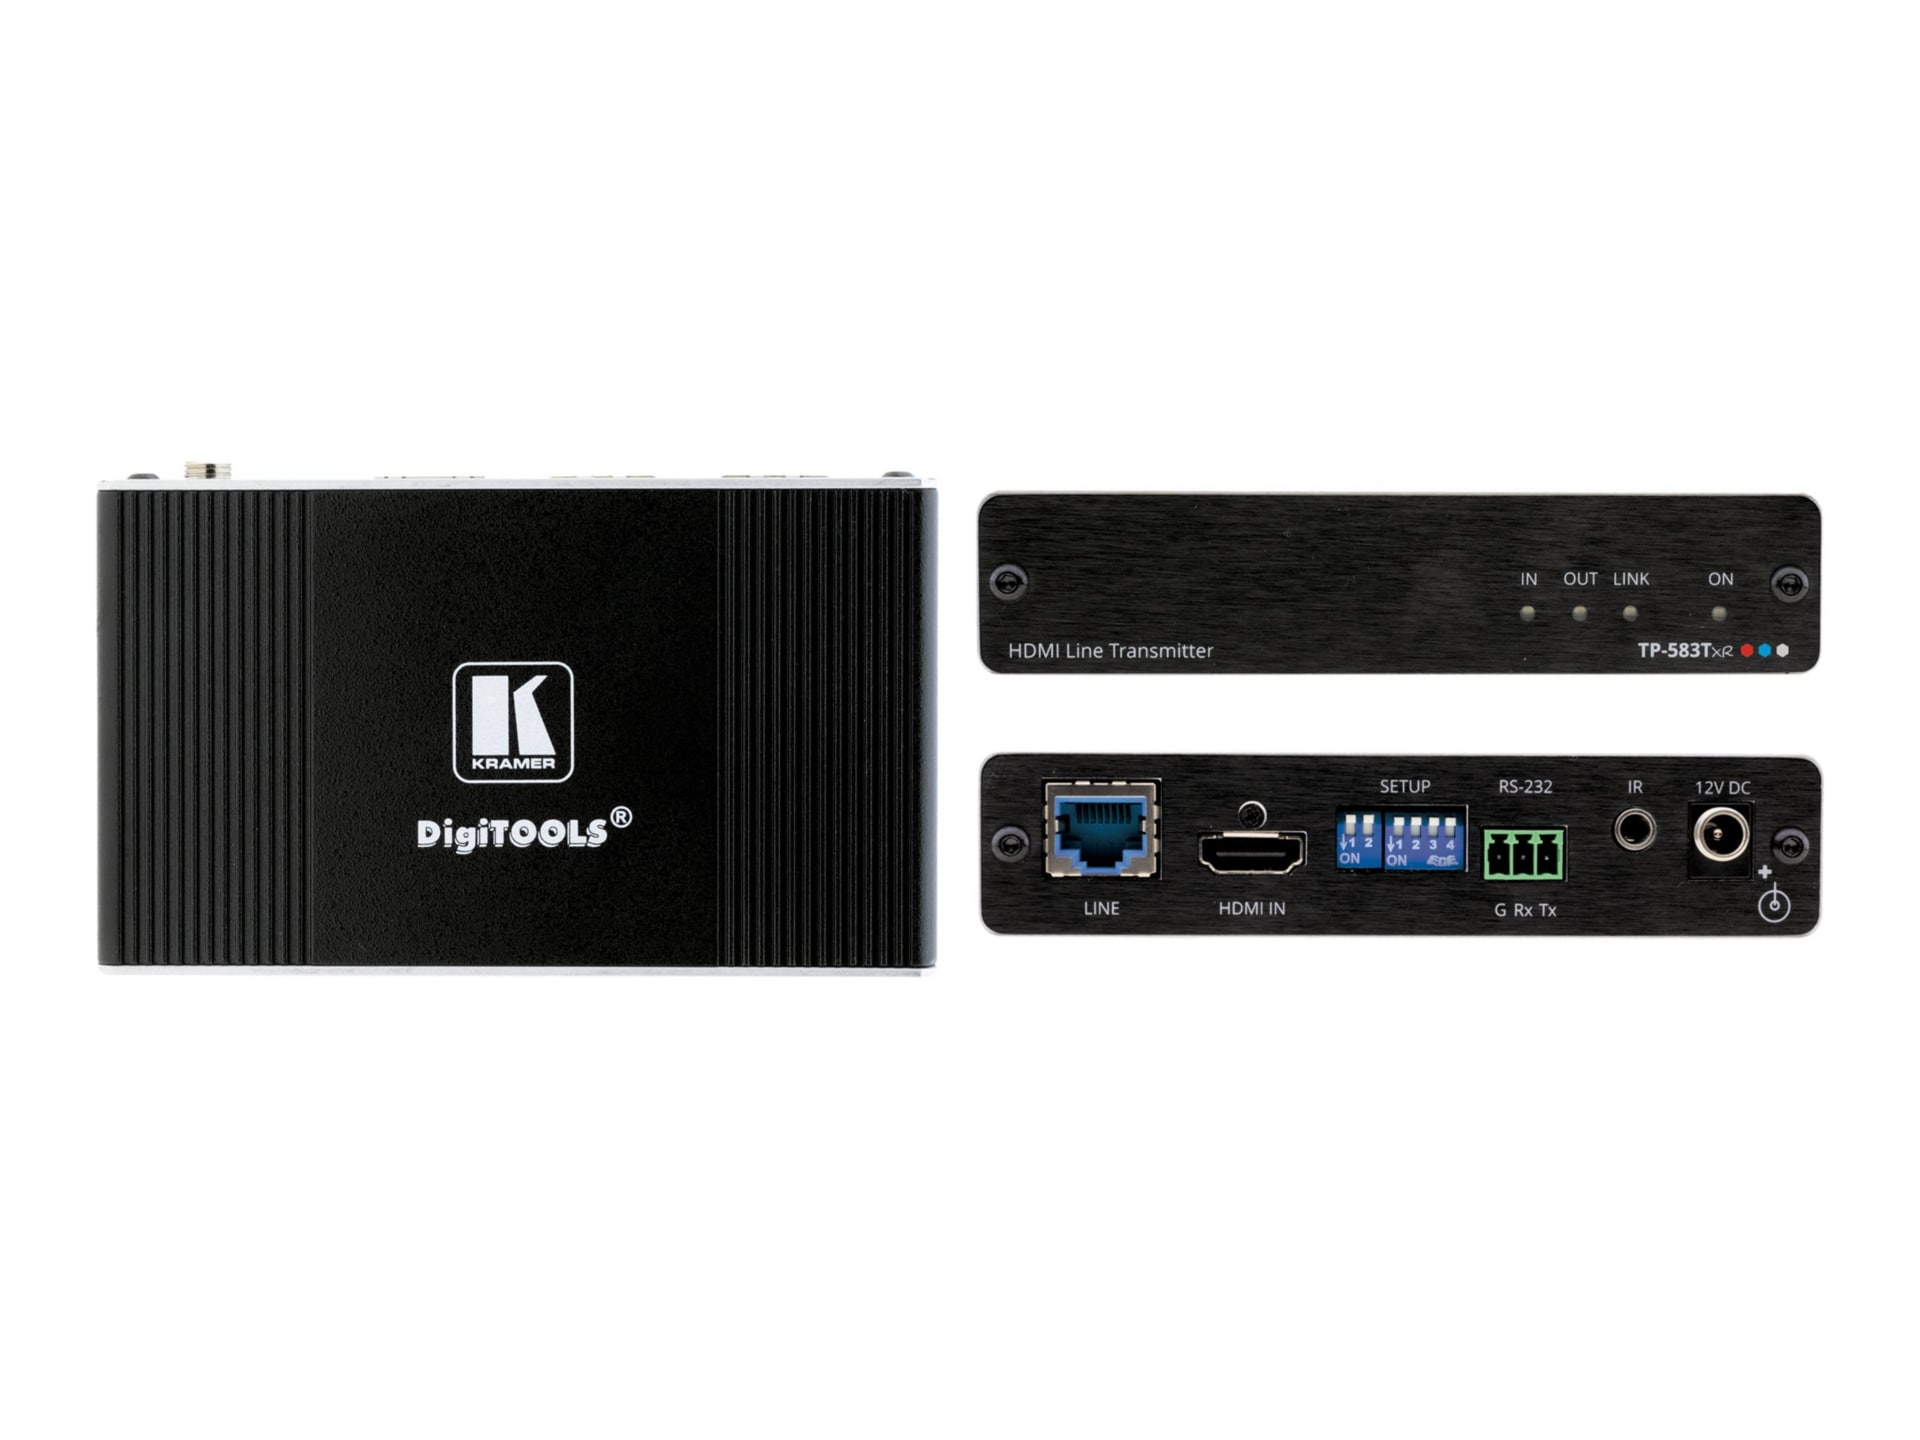 Kramer DigiTOOLS TP-583Txr - video/audio/infrared/serial extender - HDMI, HDBaseT